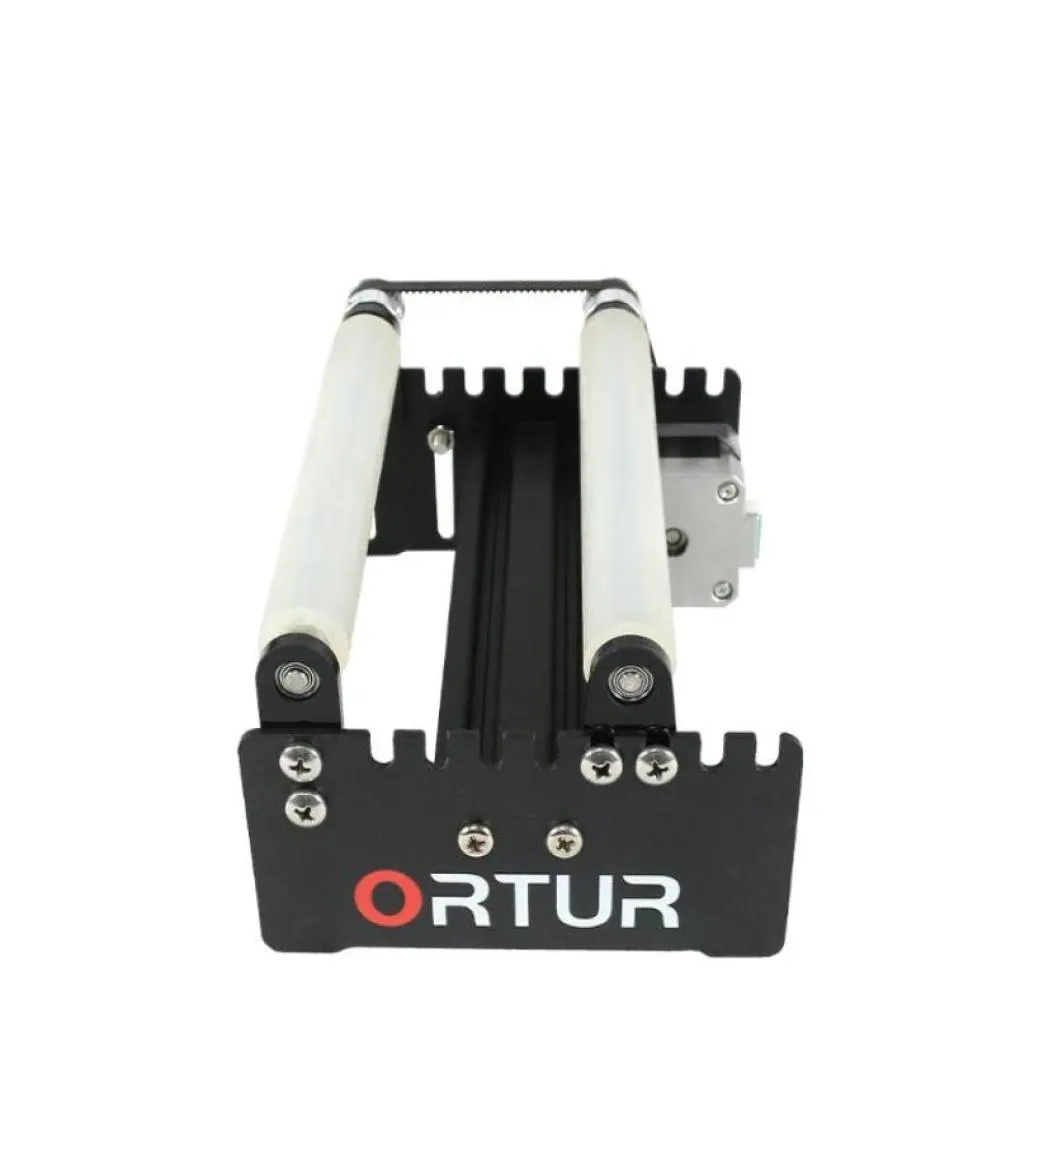 Impressoras 2021 Vendendo Ortur 3D Impressora Laser Gravador Yaxis Módulo de Gravação de Rolo Rotativo para Objetos Cilíndricos Cans3318560